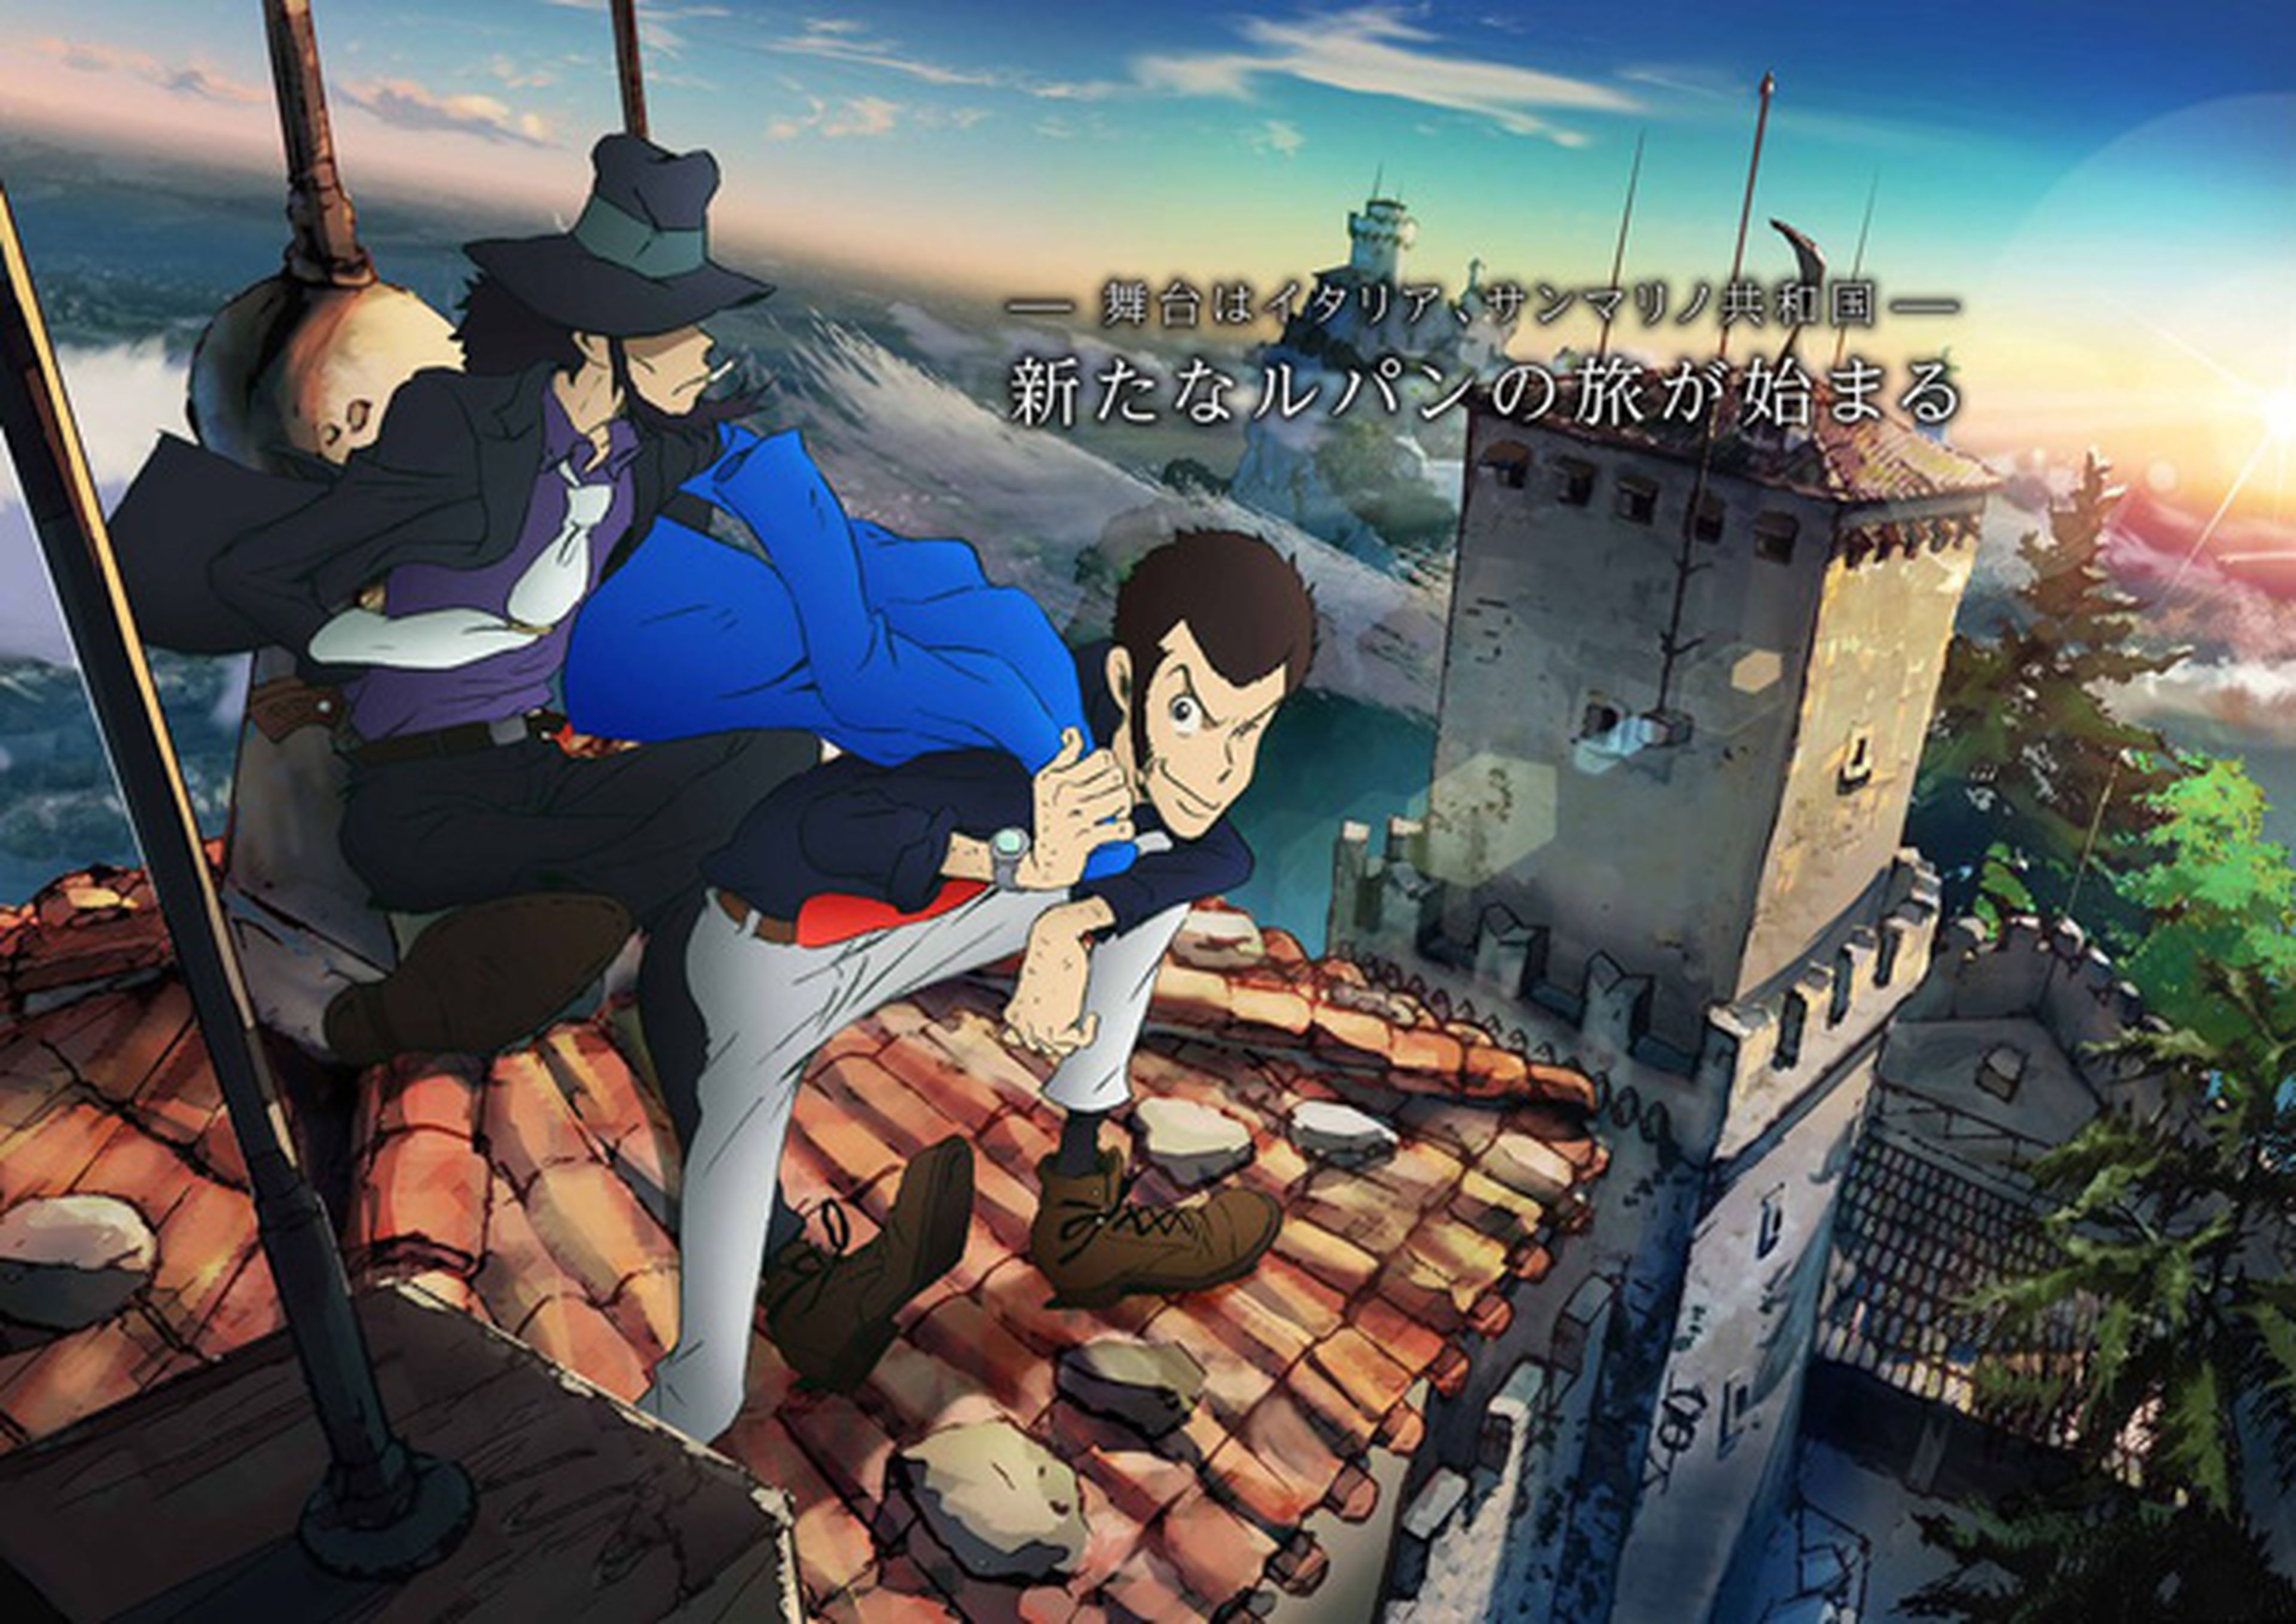 Lupin III tendrá nuevo anime